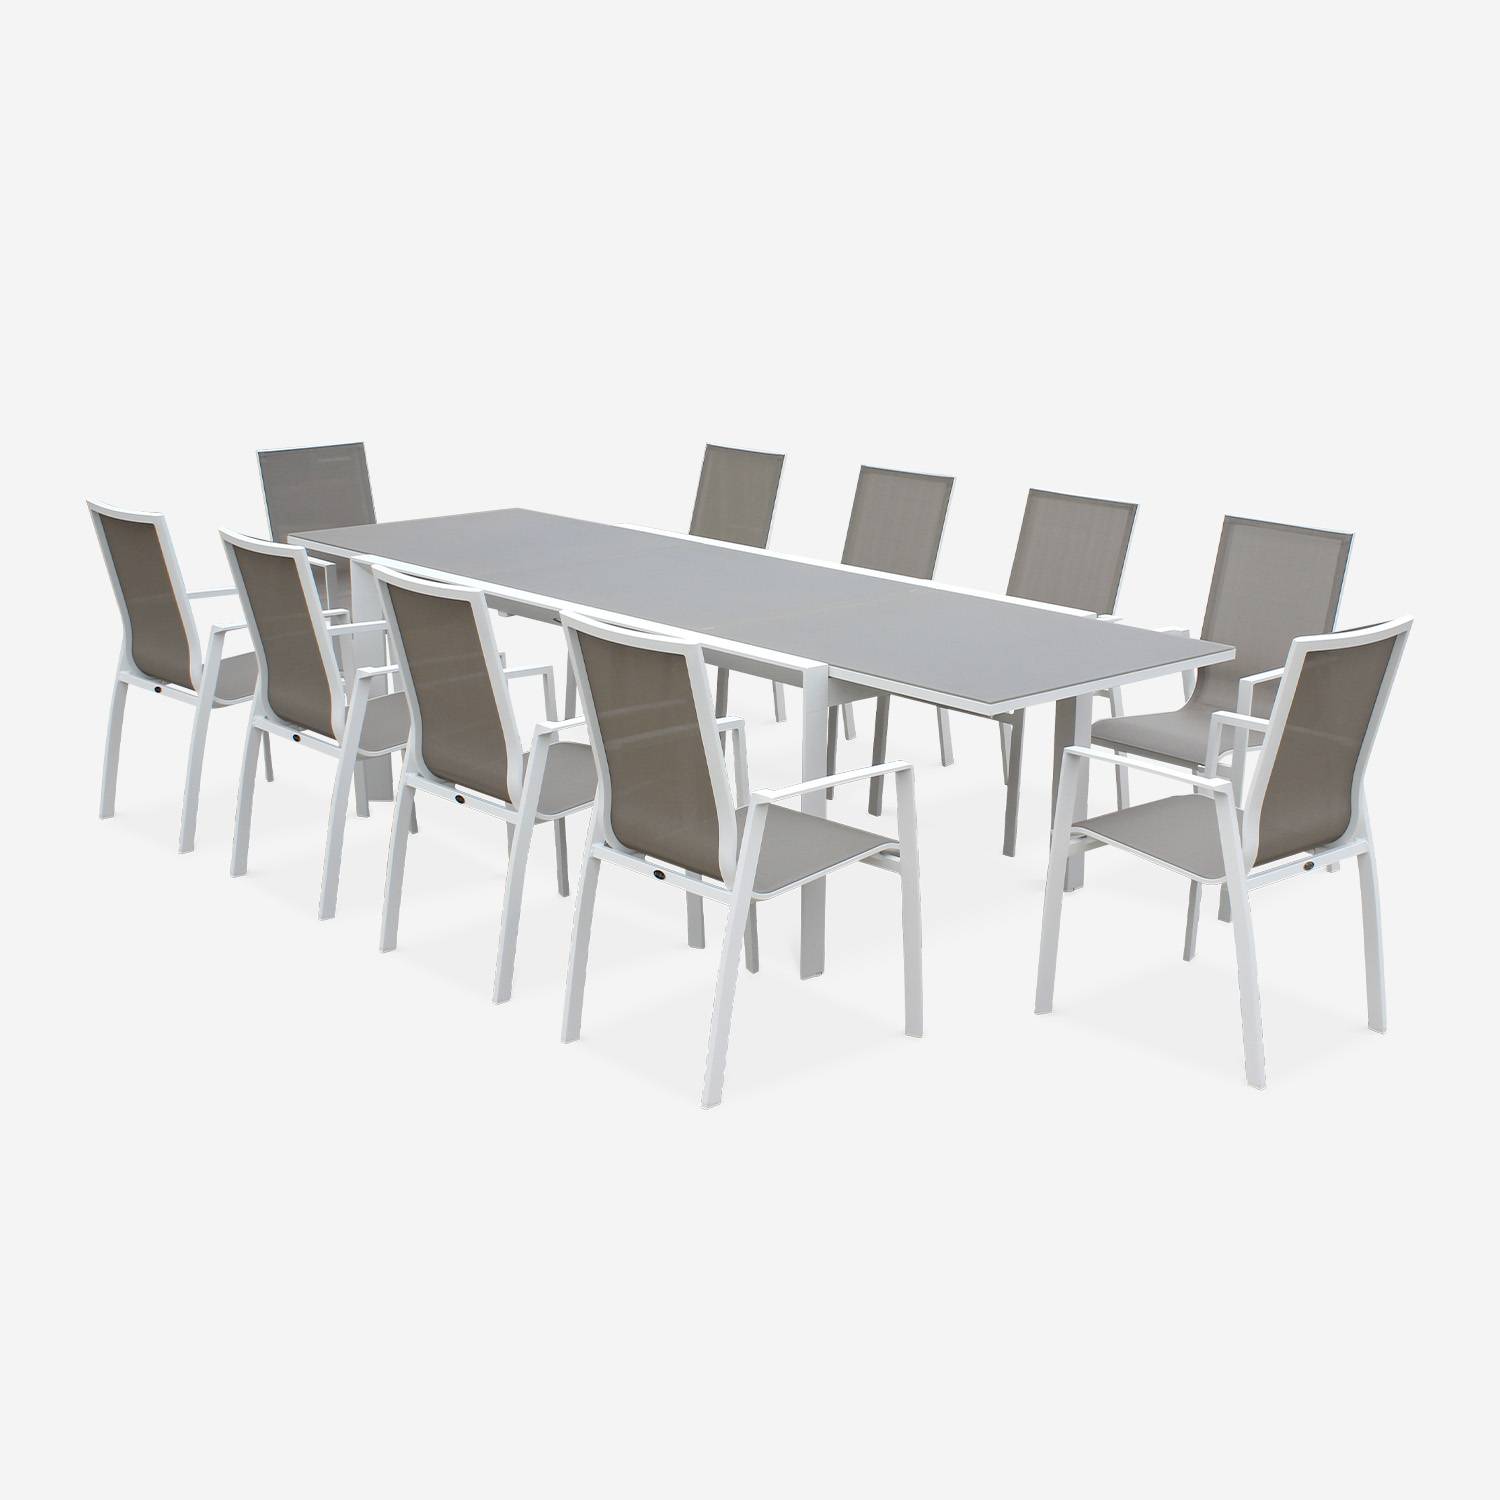 Washington set, 1 tafel met een verlengstuk,  8 fauteuils uit aluminium en textileen Photo4